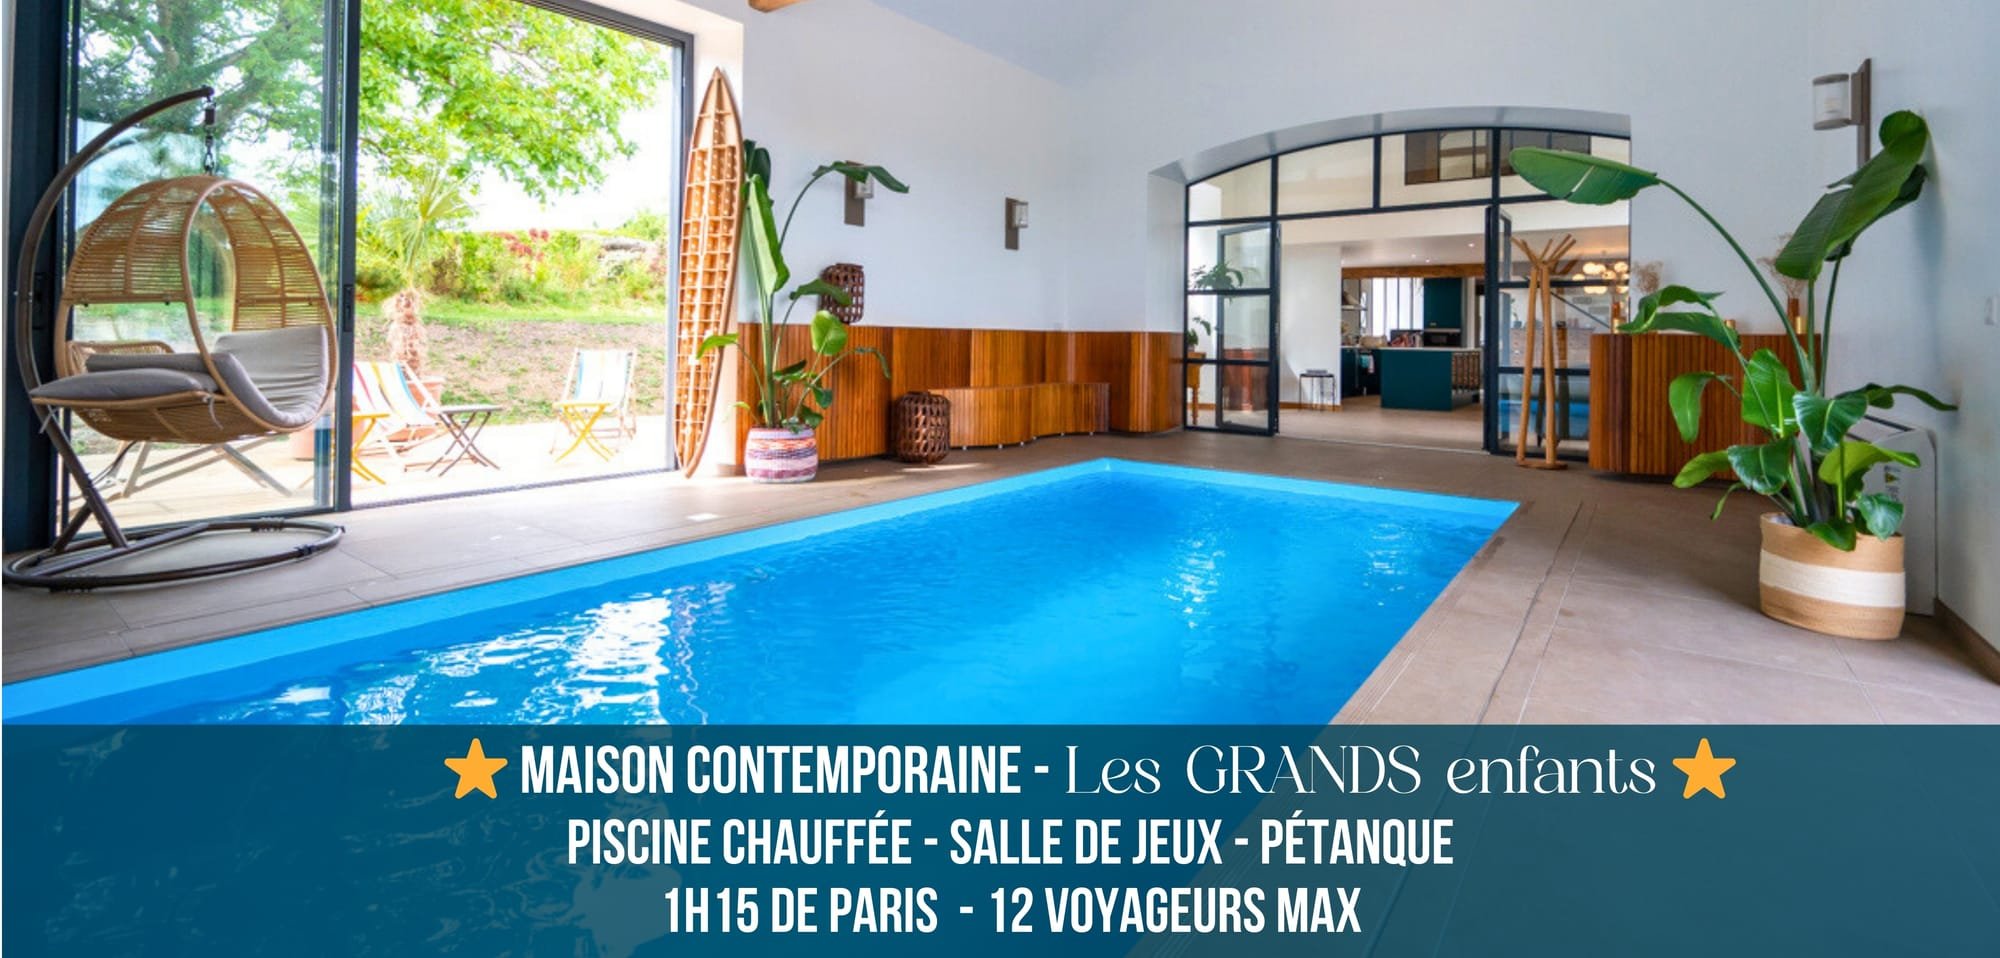 ⭐Les GRANDS enfants⭐ - A 1h15 de Paris, Piscine chauffée, Pétanque & Jeux